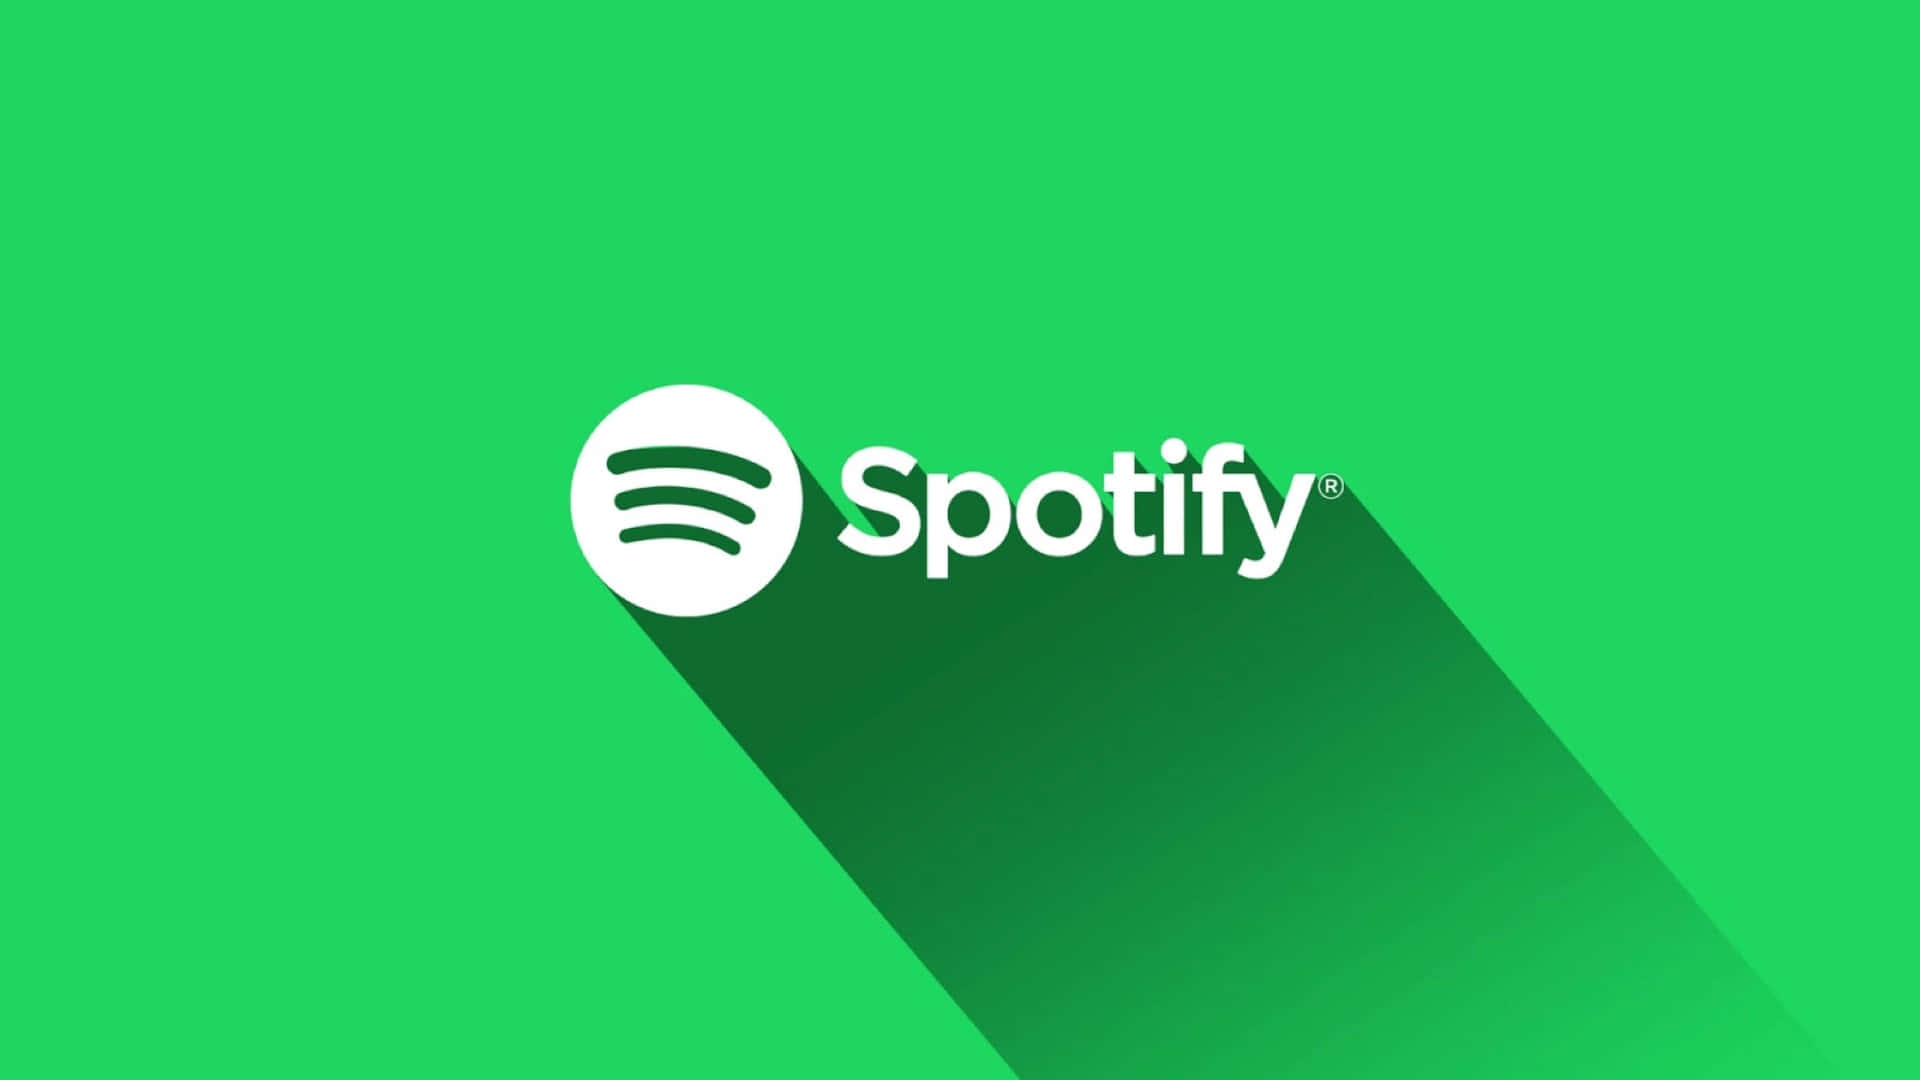 Logotipode Spotify Sobre Un Fondo Verde